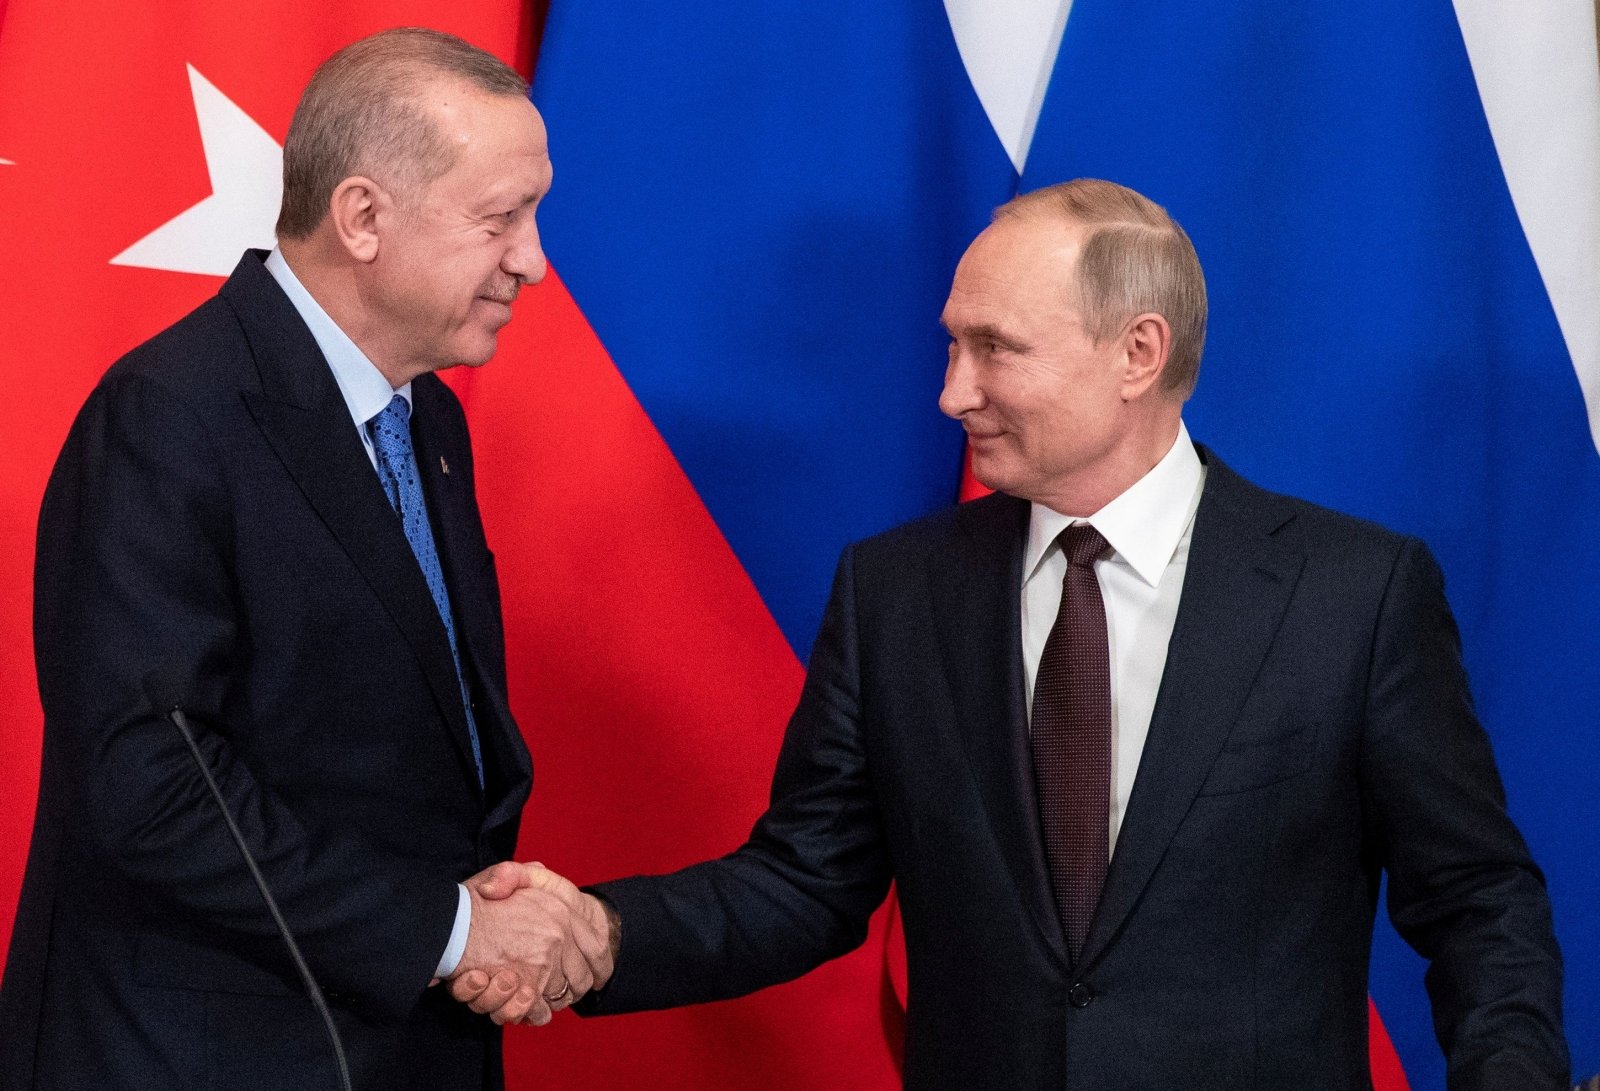 Putinas ir Erdoganas vyksta į Teheraną derybų dėl Sirijos